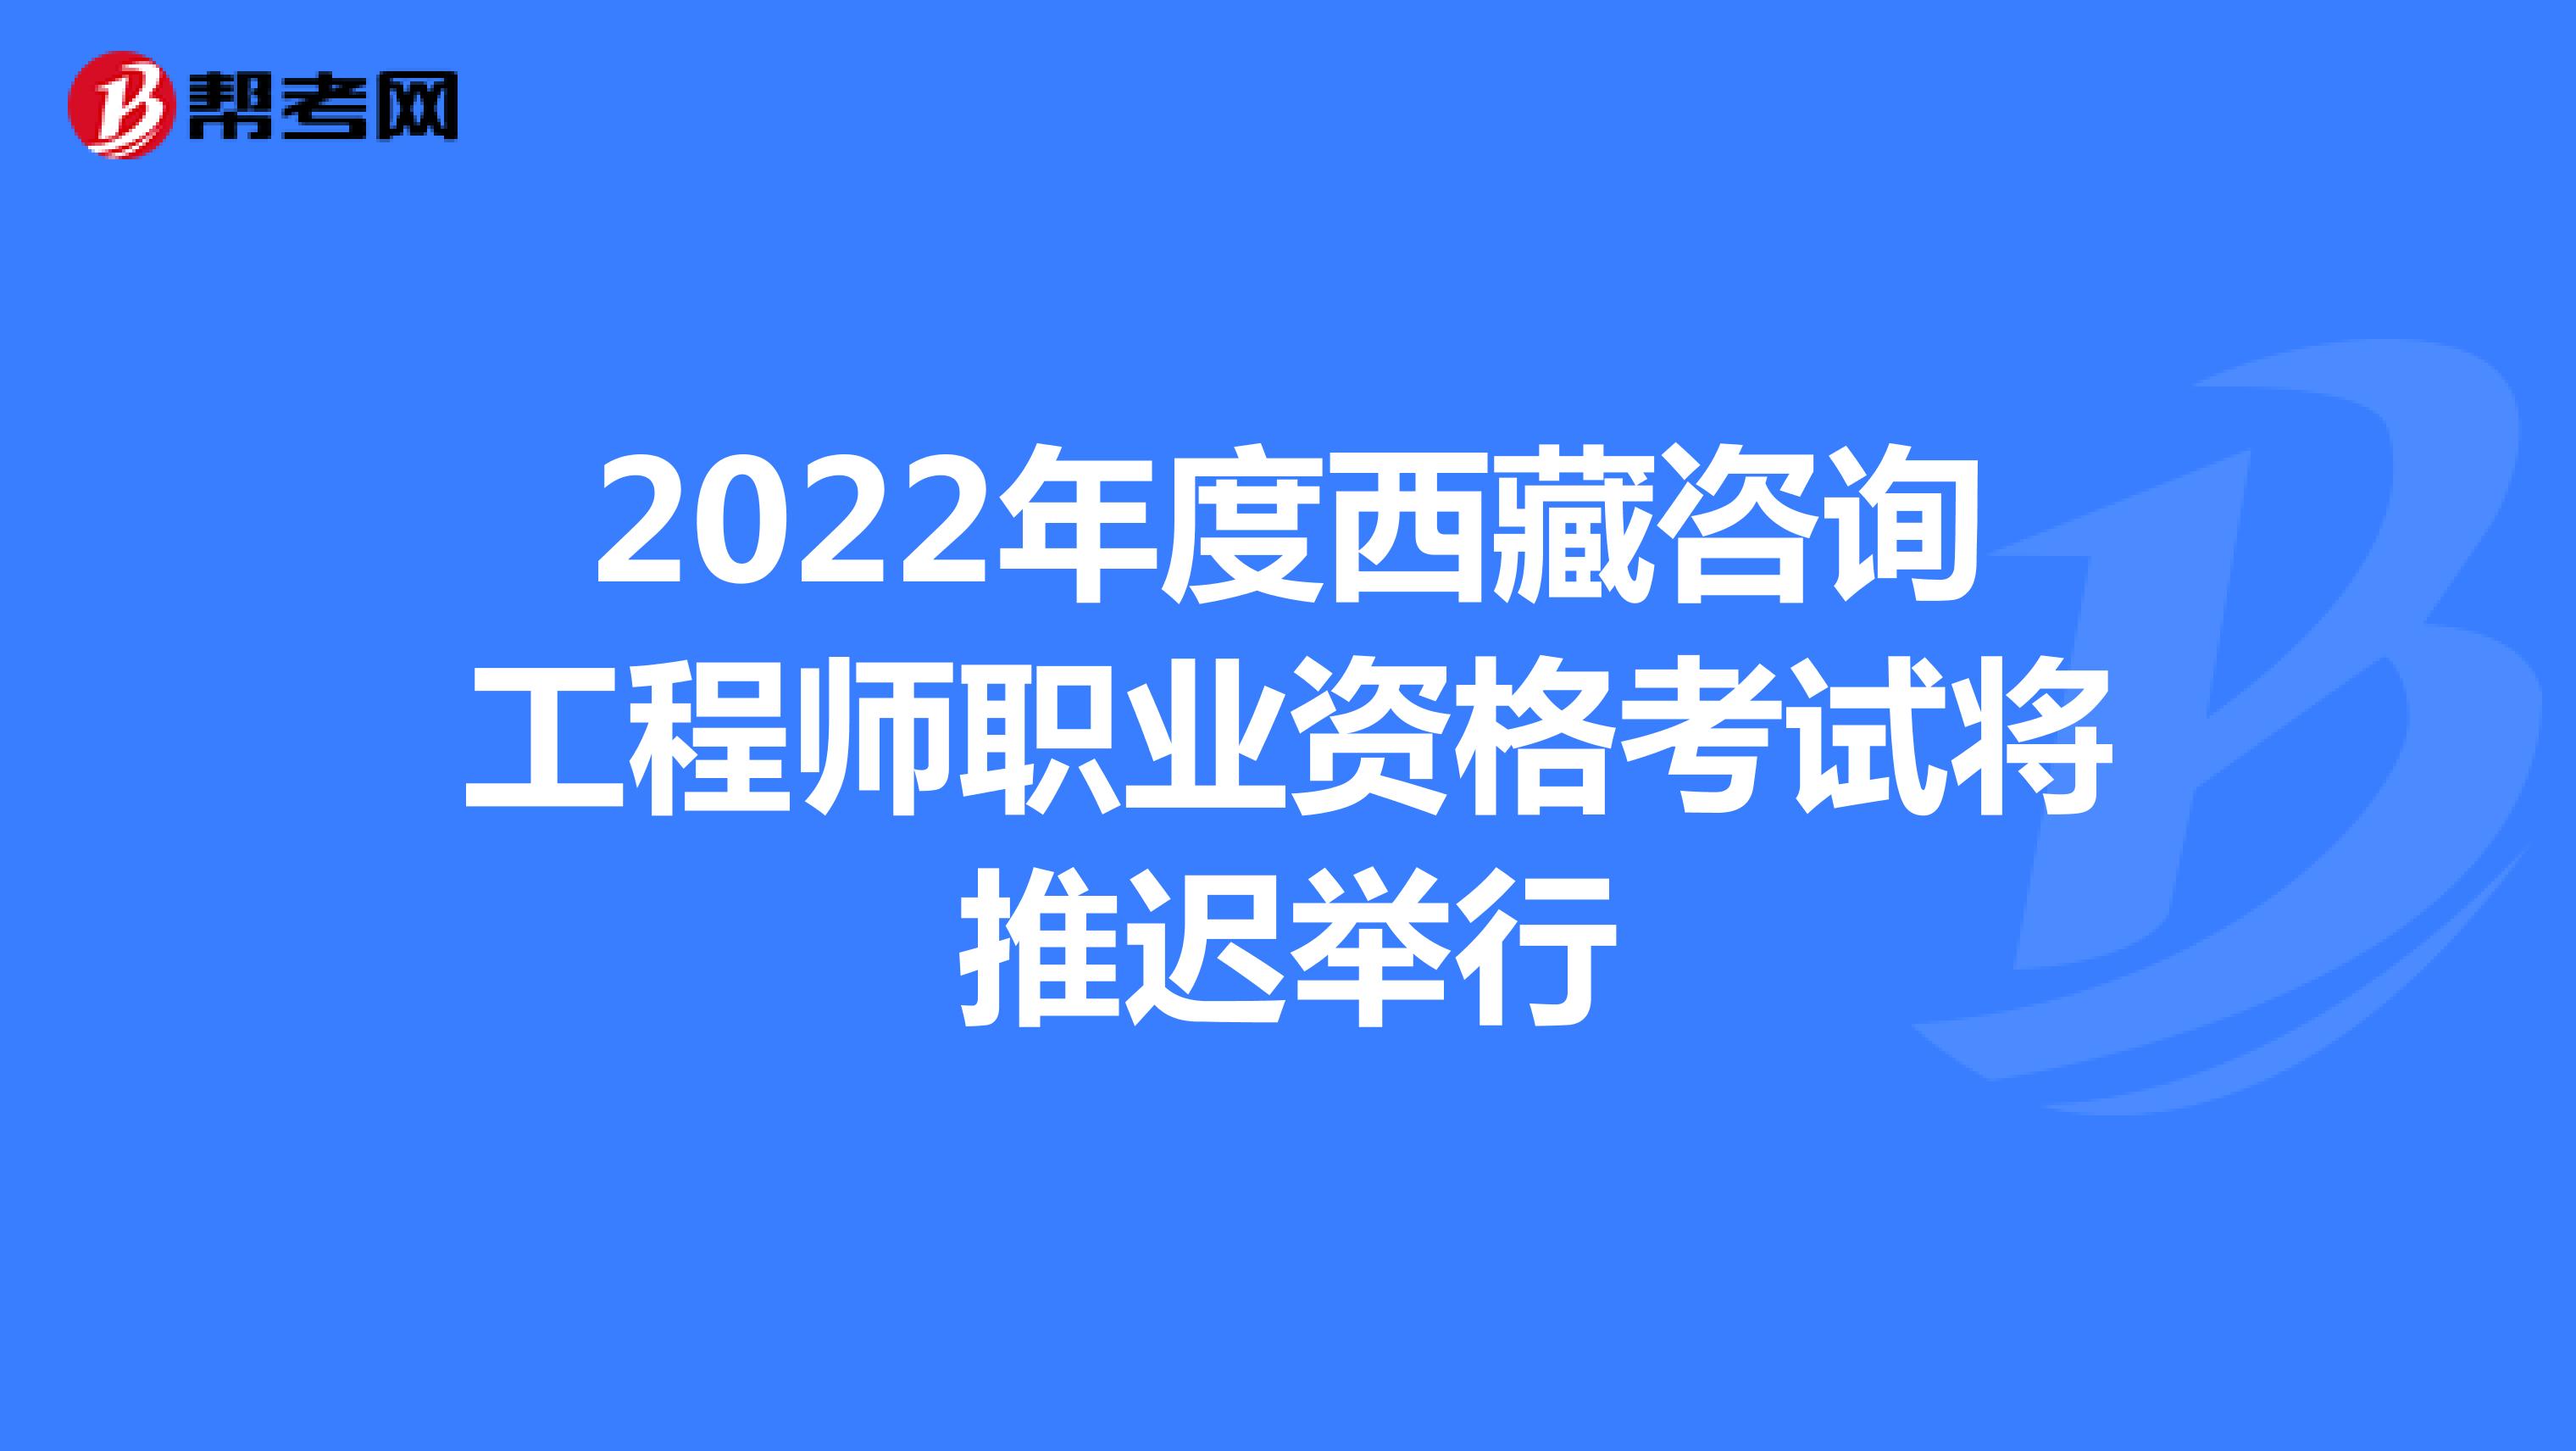 2022年度西藏咨询工程师职业资格考试将推迟举行